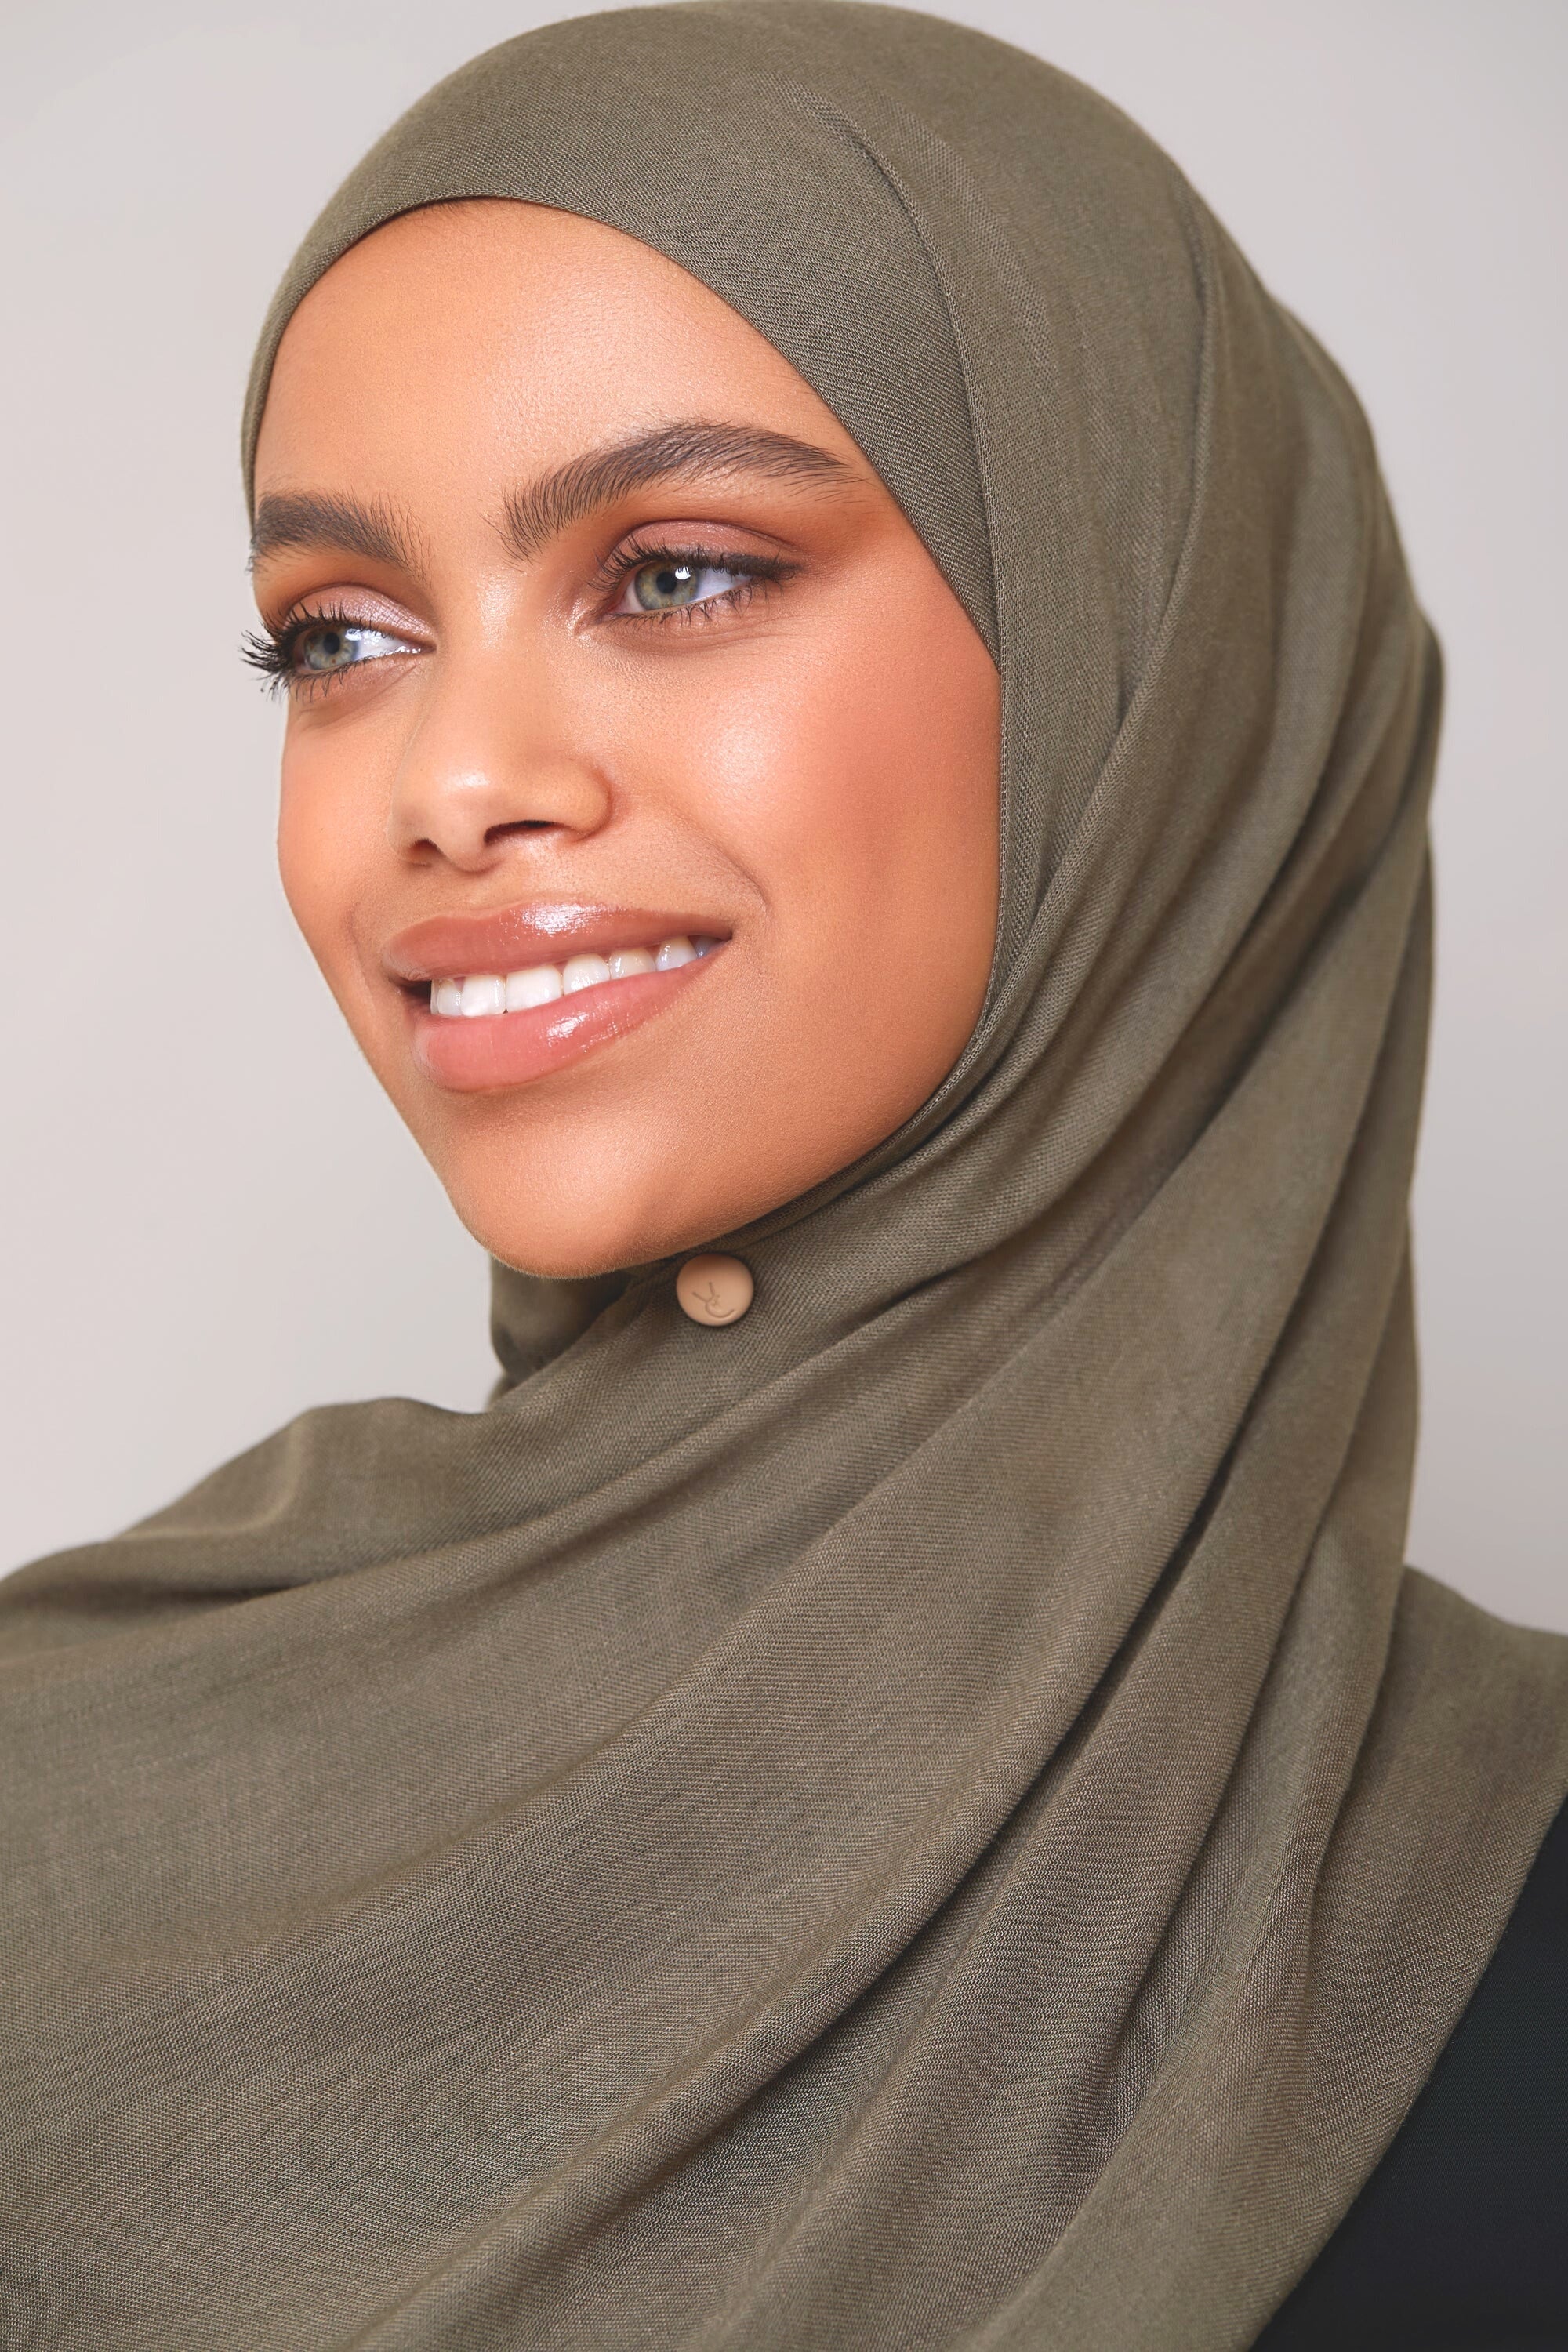 Modal Hijab - Kalamata epschoolboard 